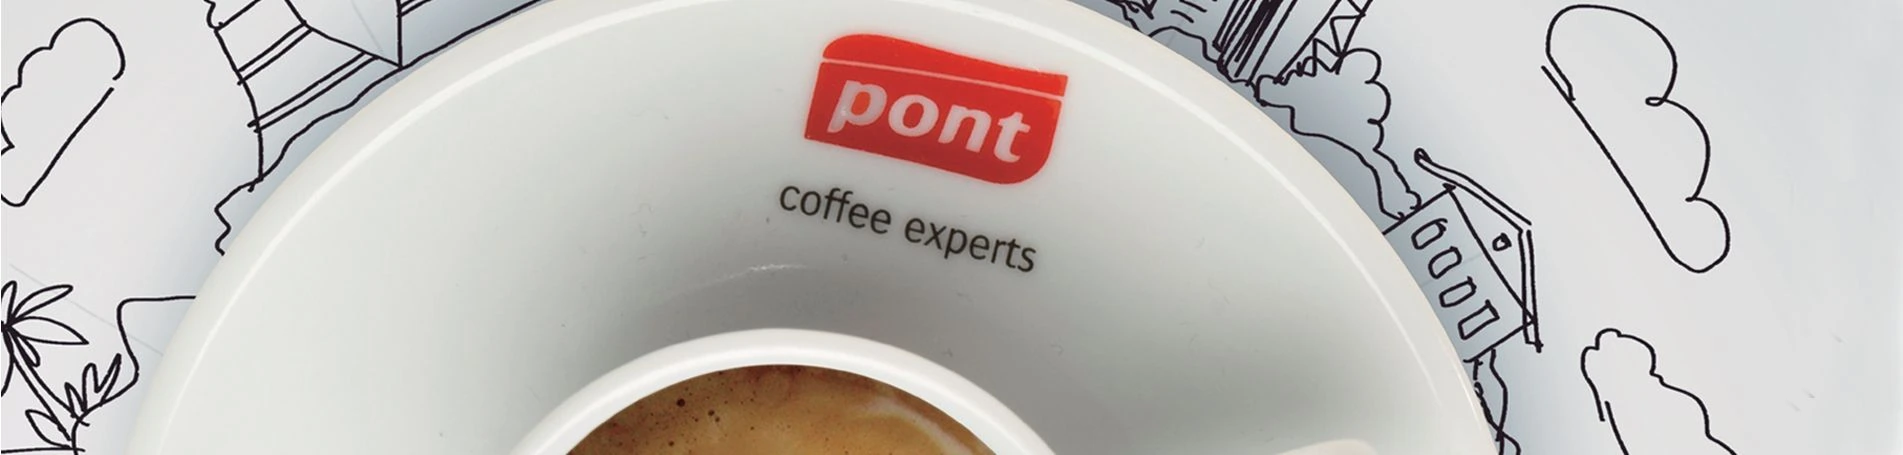 Cafès Pont presenta Origins; su nueva gama de productos